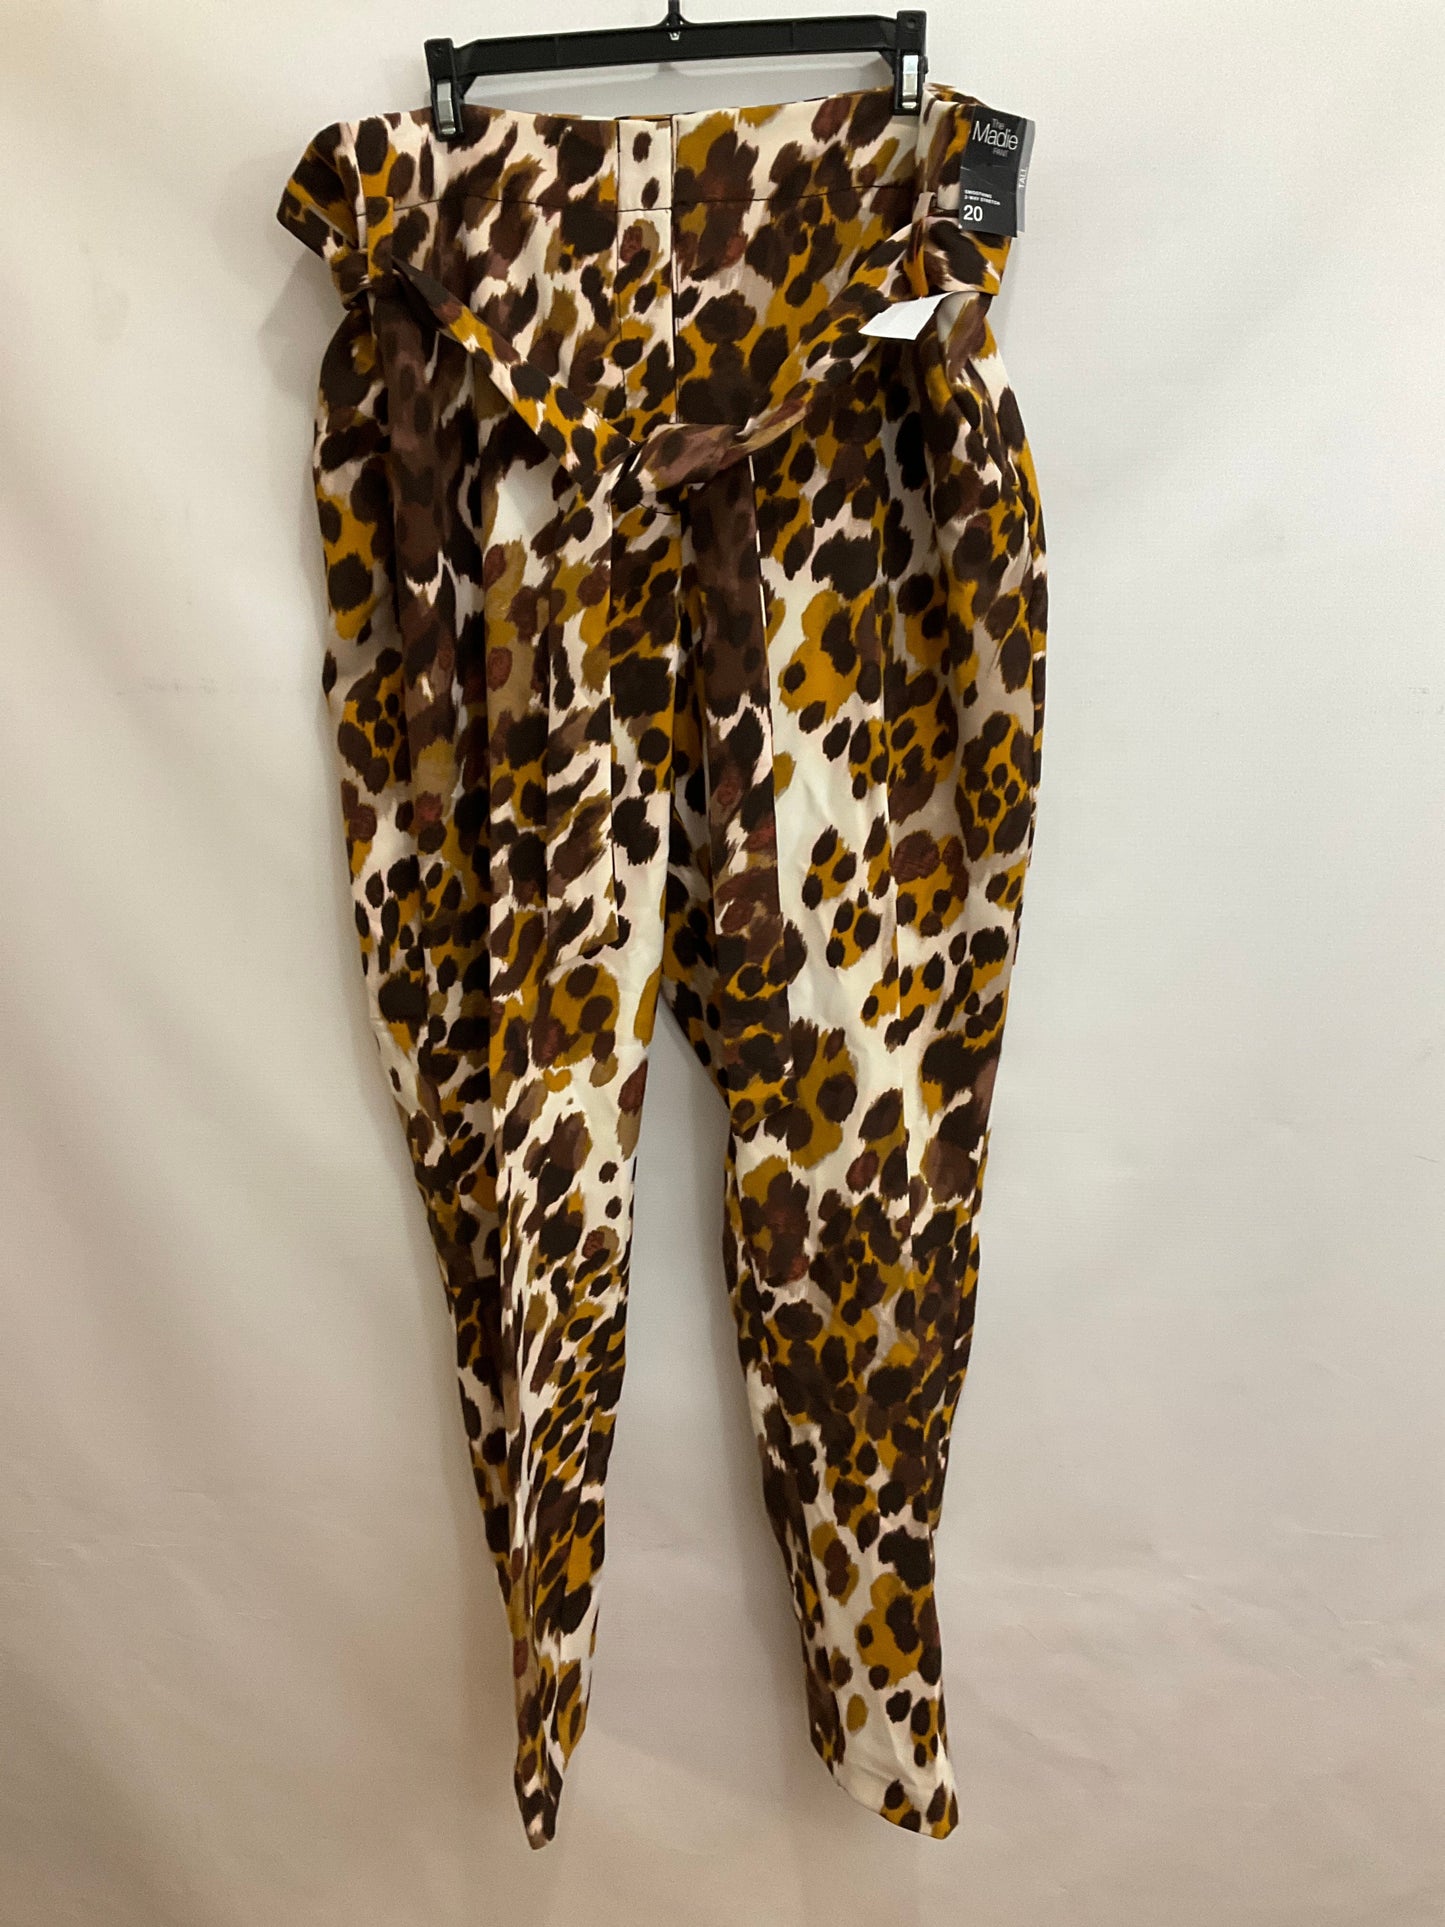 Animal Print Pants Work/dress New York And Co, Size 20